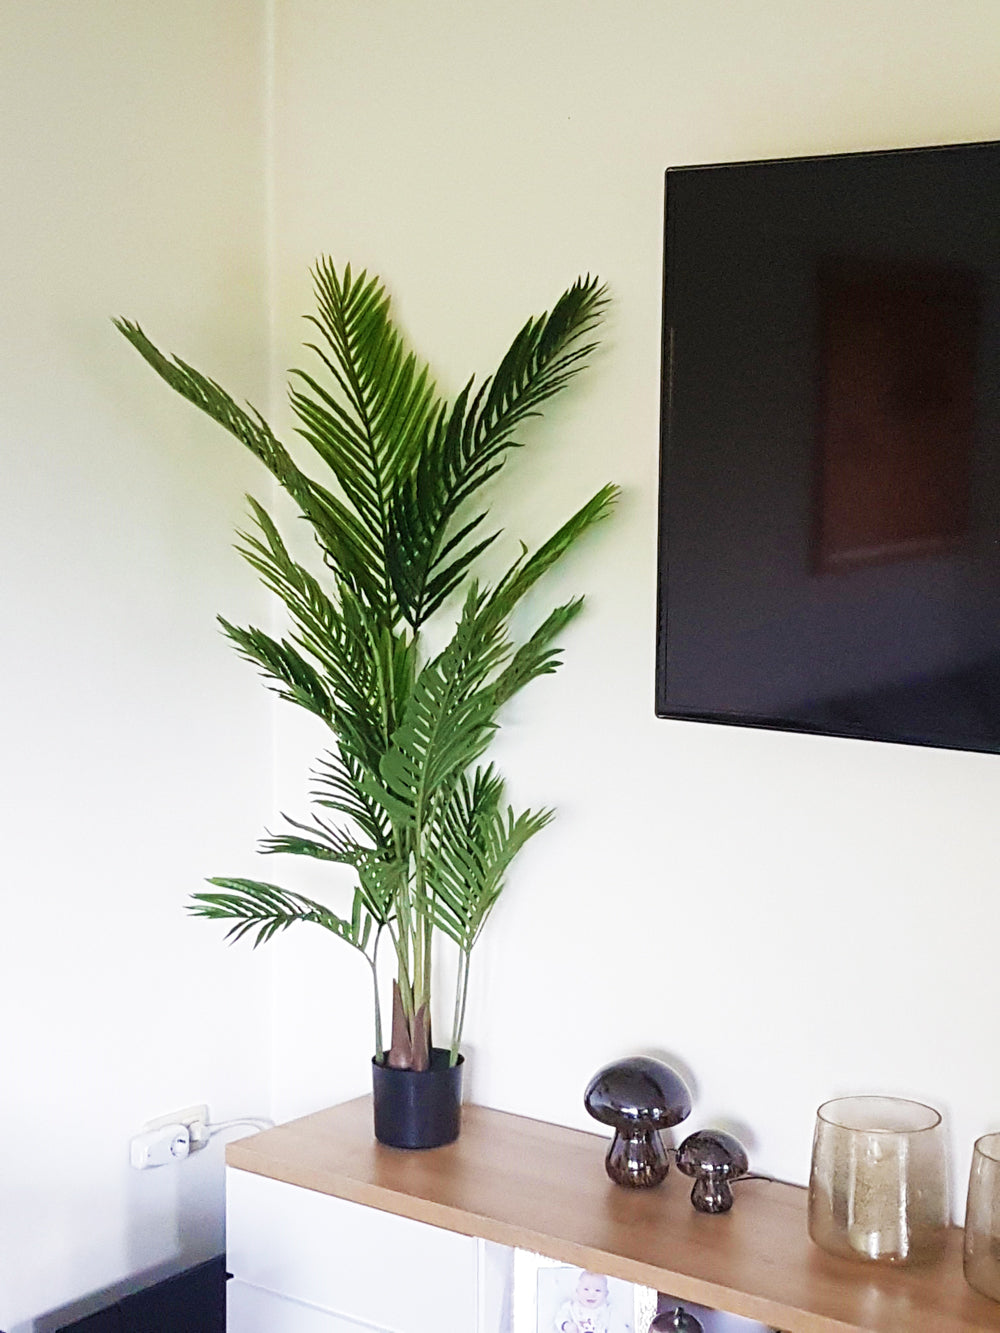 Künstliche Palme 140 cm